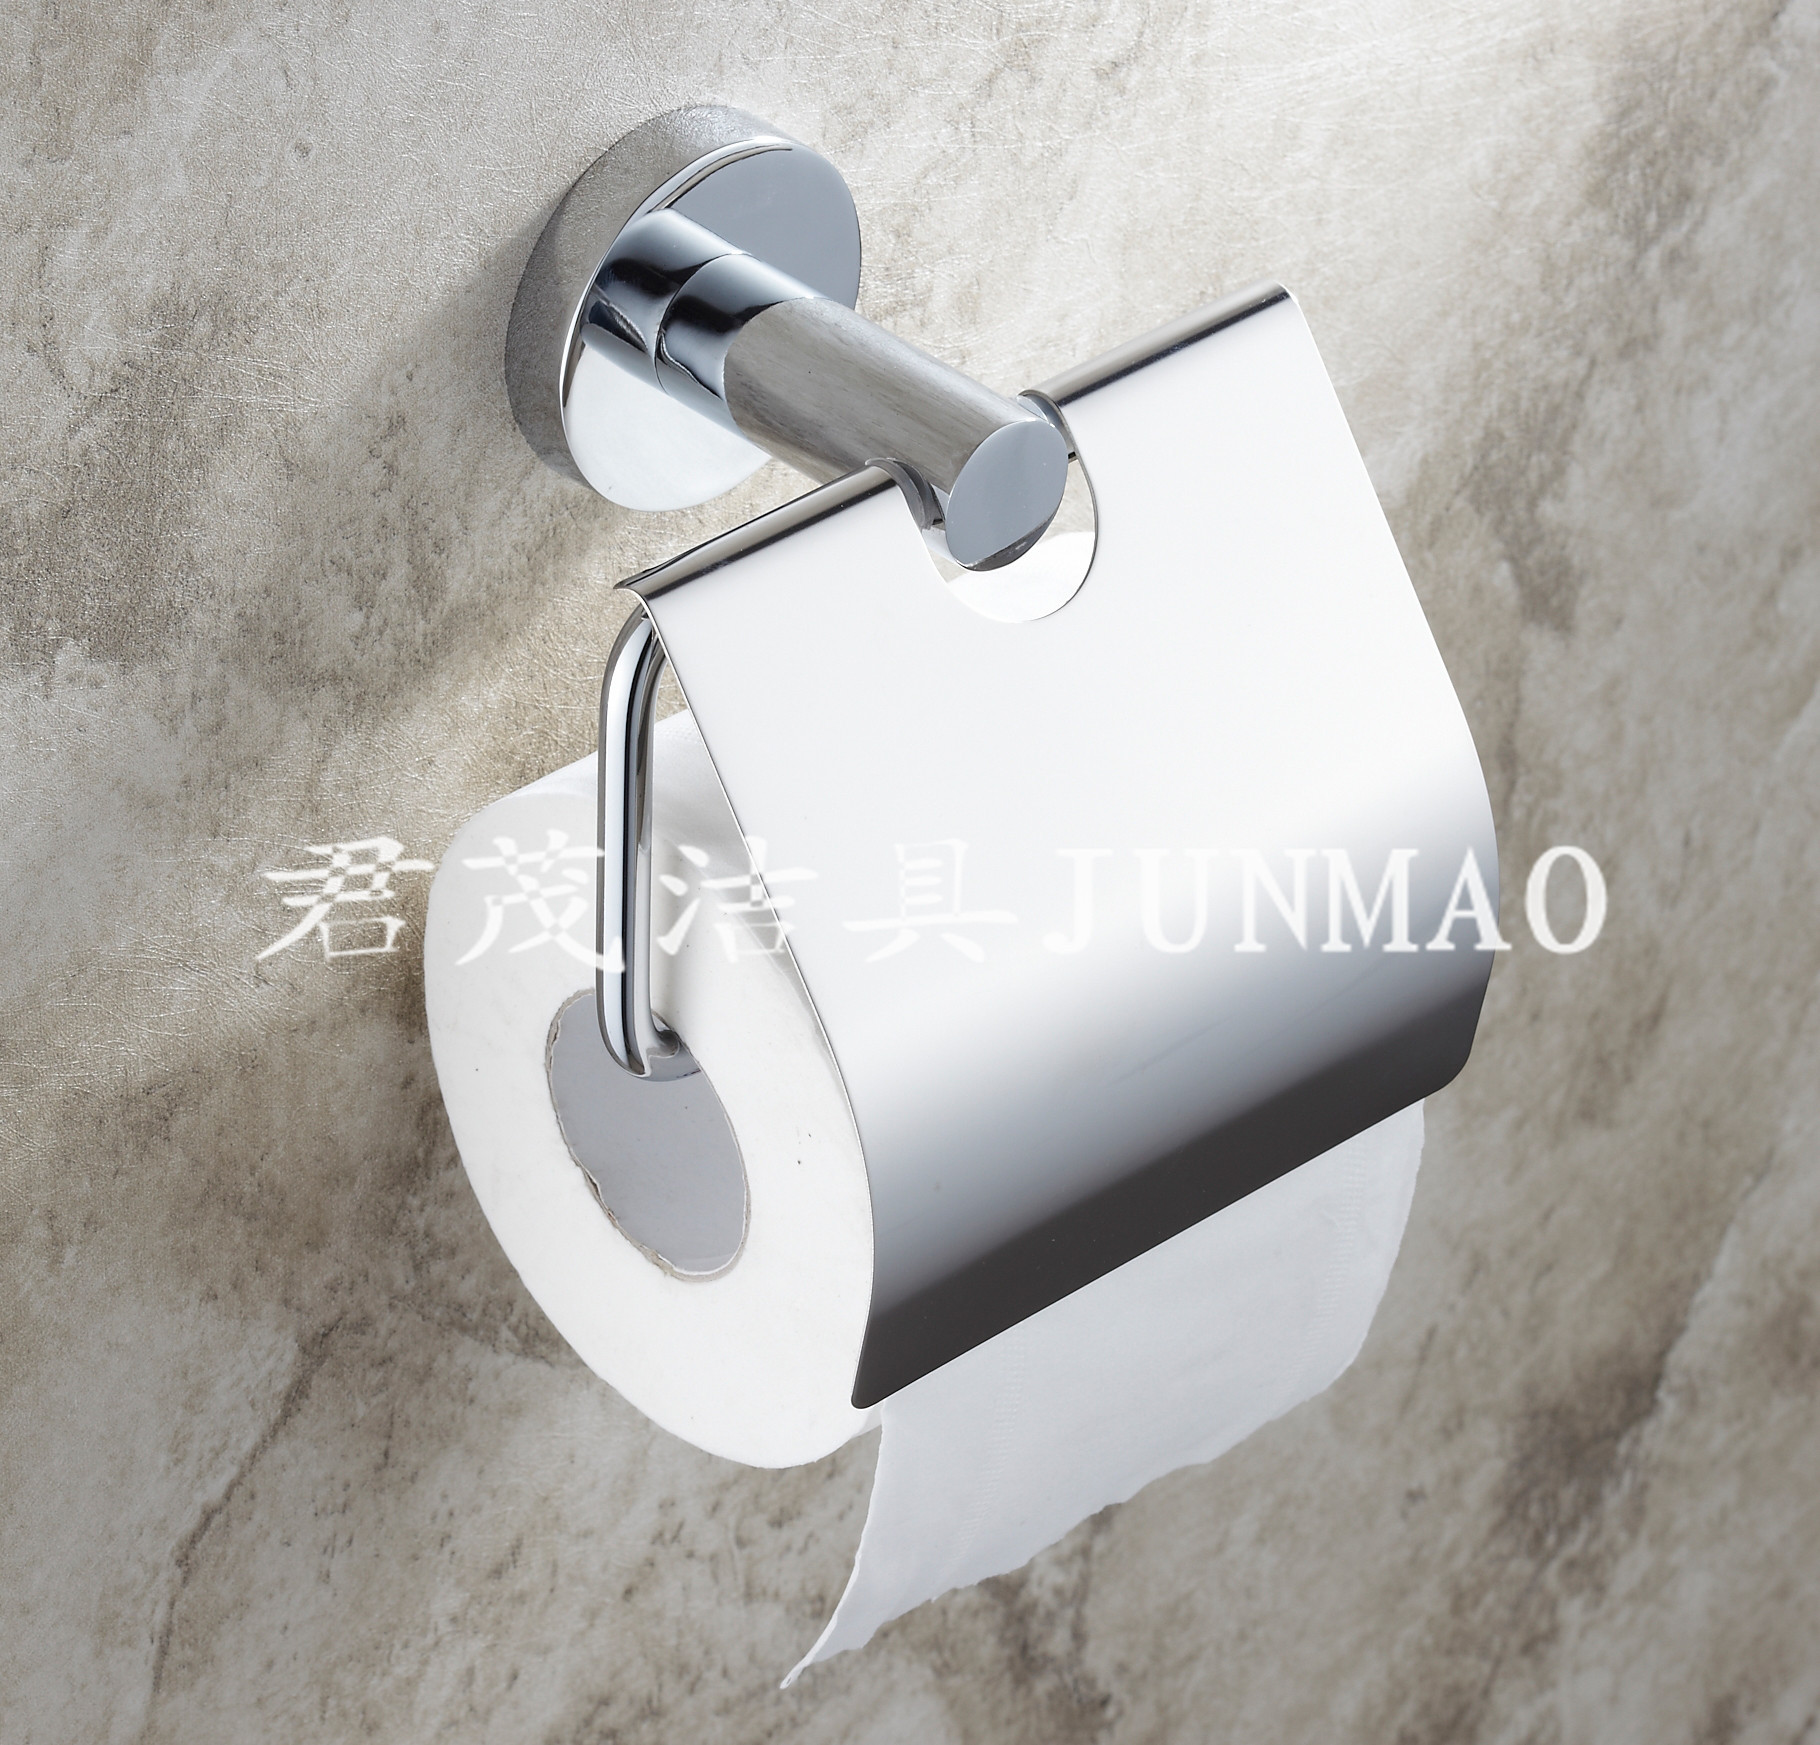 JM56009不锈钢厕纸架马桶配件 卫浴挂件五金 批发 厂家直销